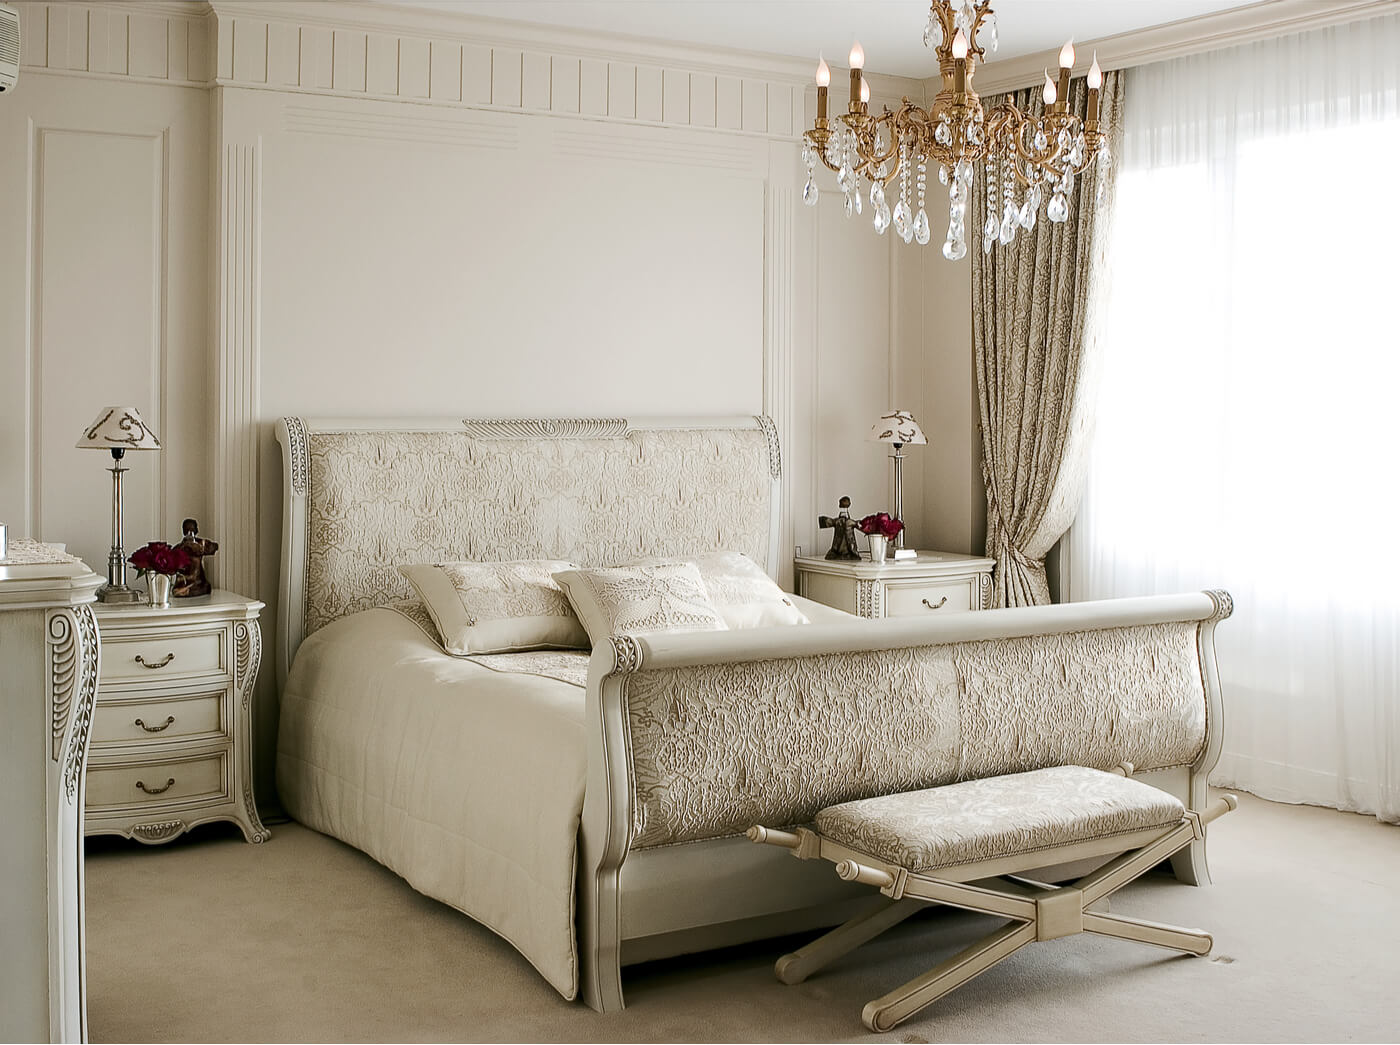 Dormitorio clásico y romántico